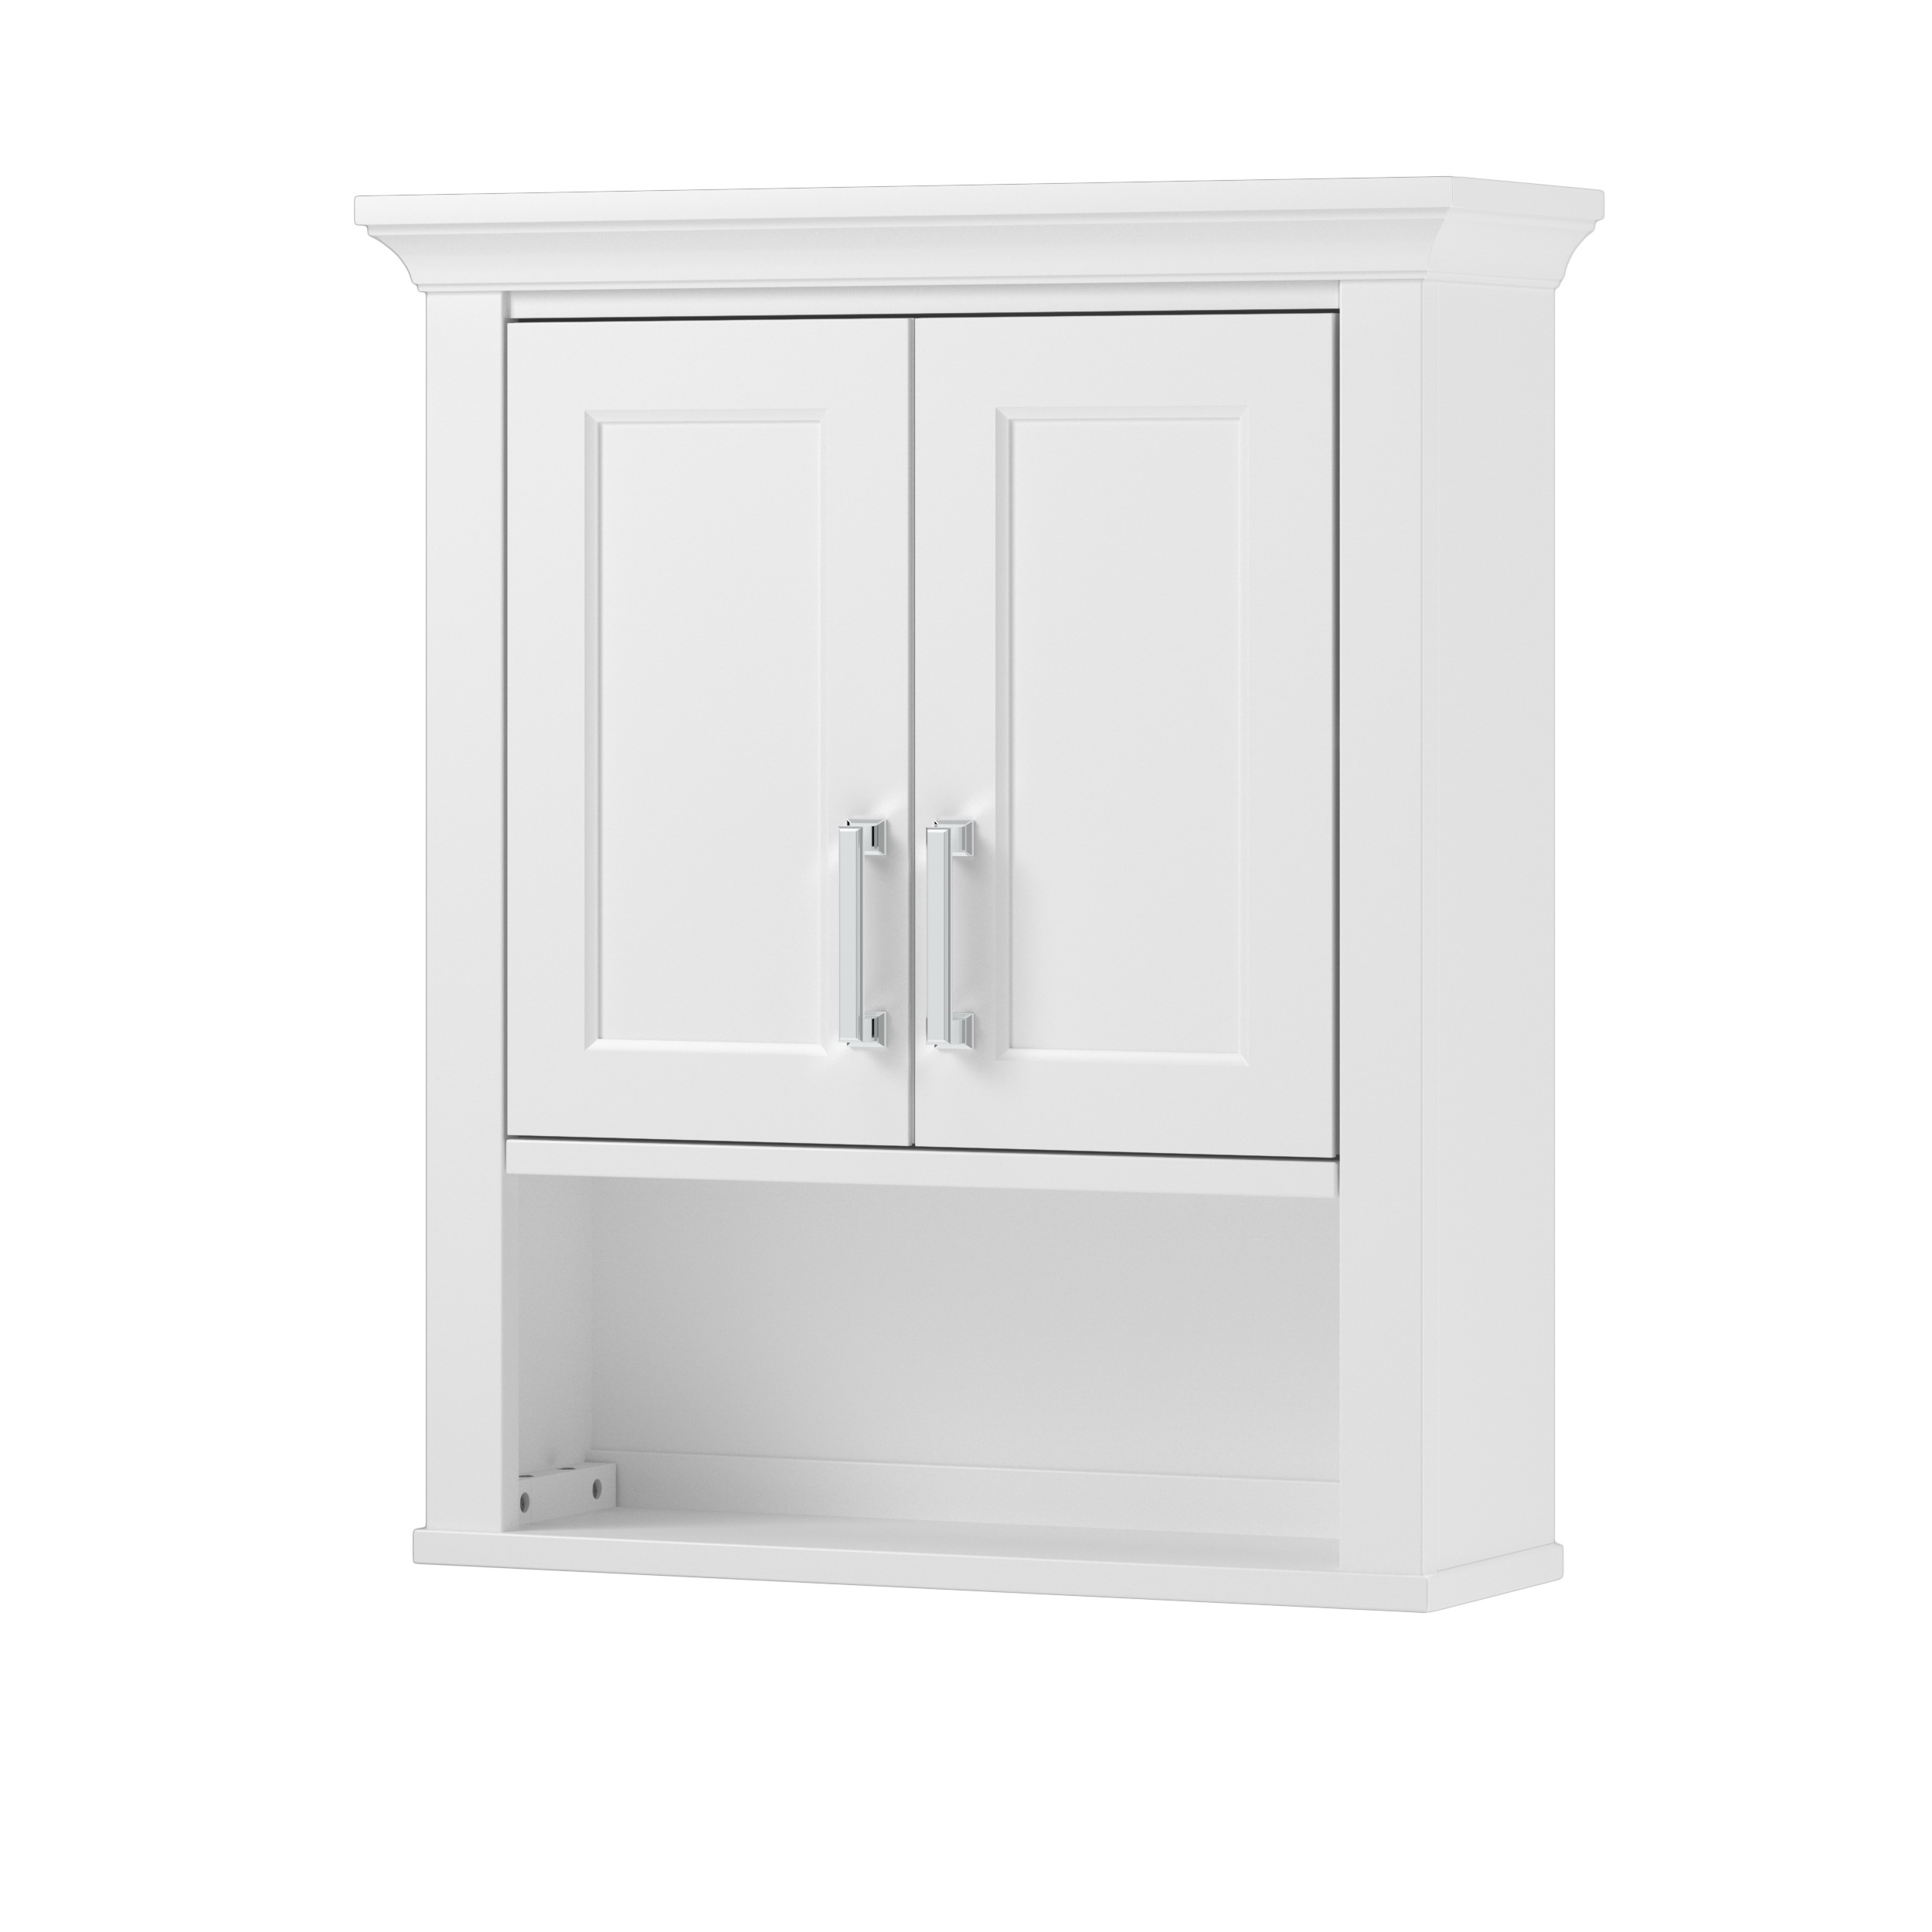 Hollis HOWW2428 Bathroom Cabinet, 2-Door, 1-Shelf, Wood, White